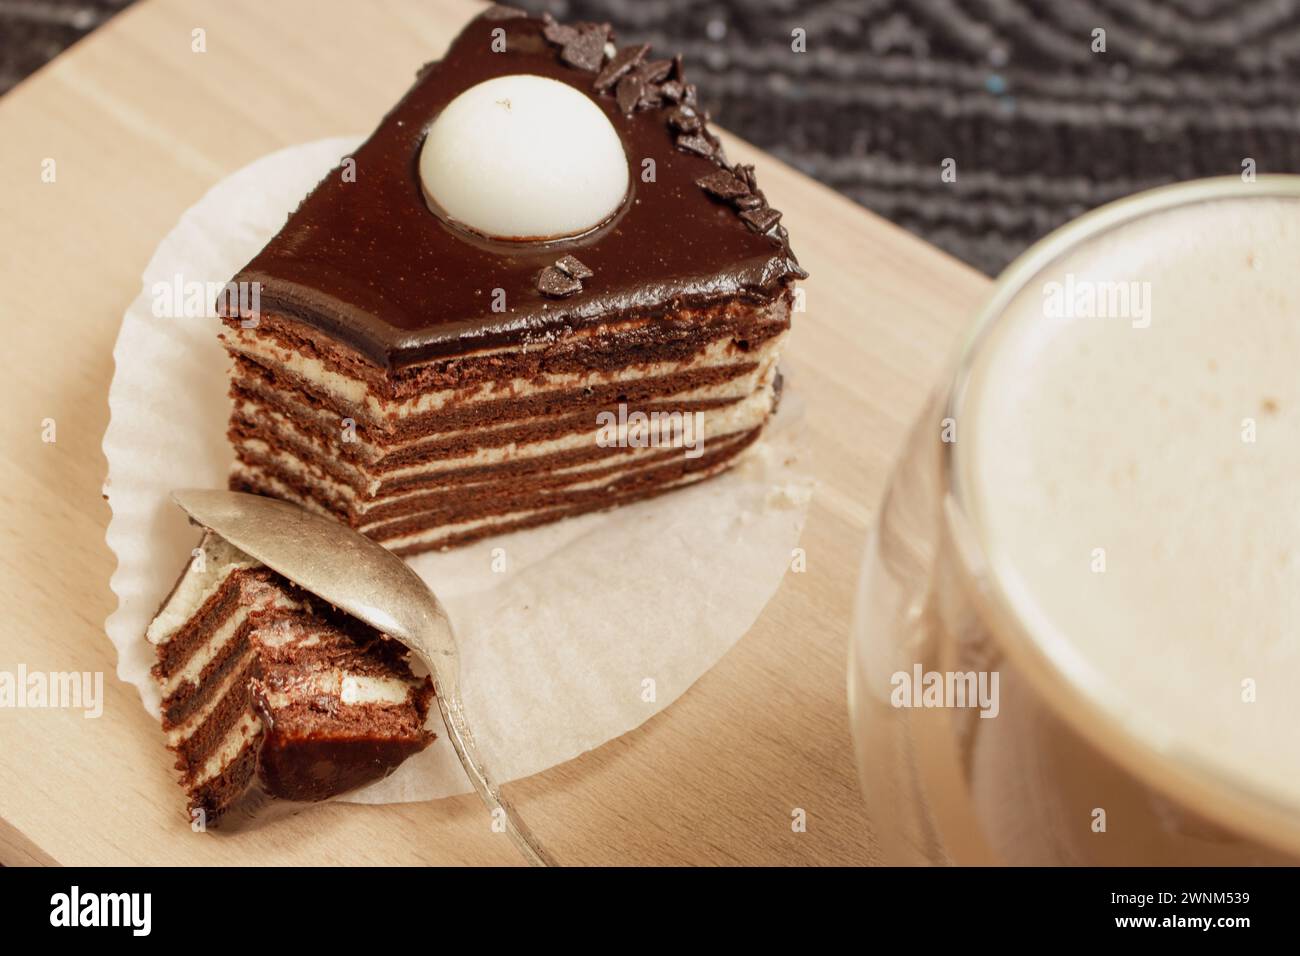 Schokoladenkuchen mit Kaffeetasse. Kekskuchen mit geschmolzener Ganache darauf. Scheibe cremige Tarte und Latte. Dessert mit Vanille und Kakaoschicht. Stockfoto